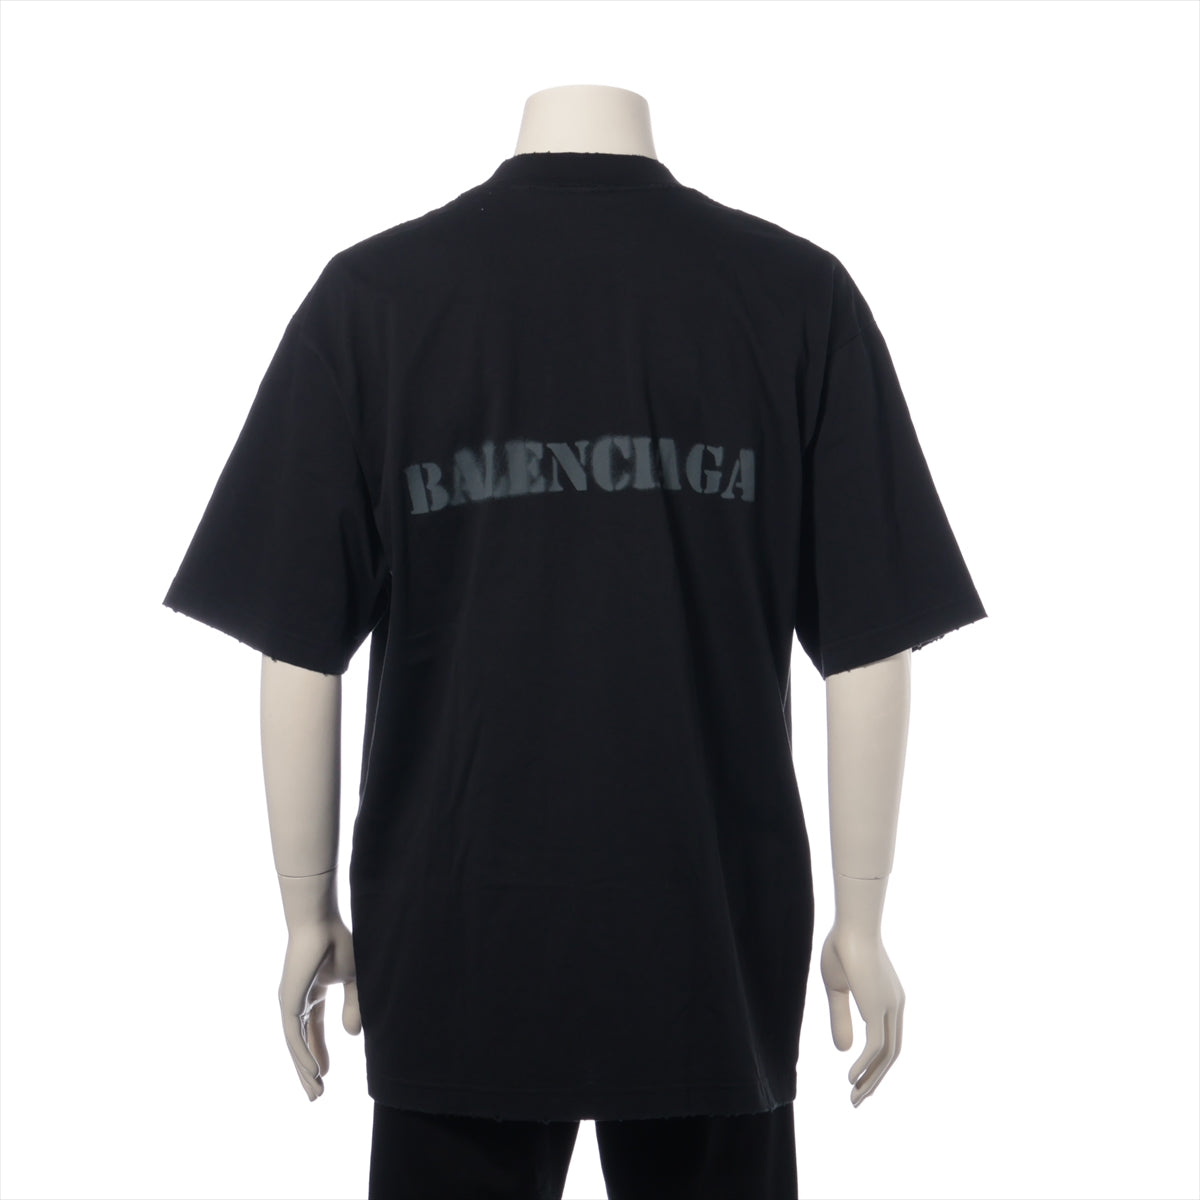 バレンシアガ 24年 コットン Tシャツ S ユニセックス ブラック  764235 ダメージ加工